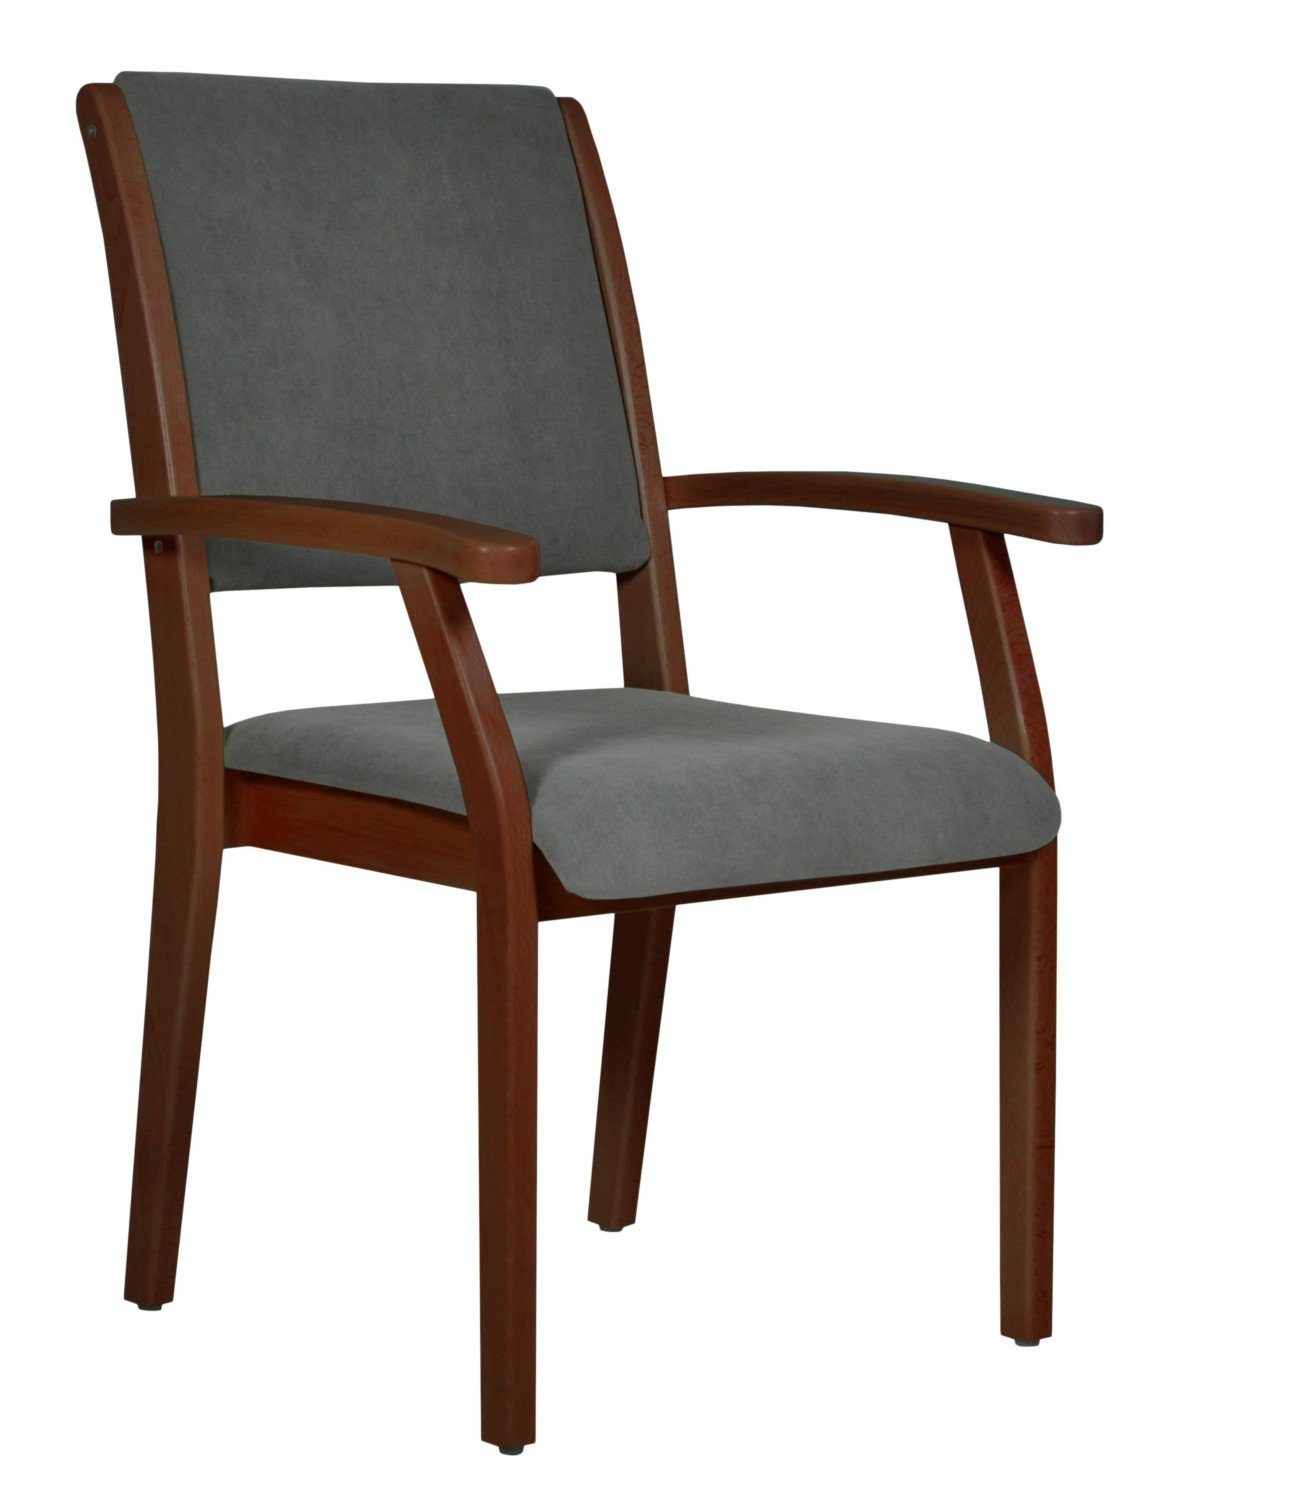 Devita Stuhl Seniorenstuhl Pflegestuhl Kerry - Verschiedene Sitzhöhen (Einzel), stapelbar, standfest, verschieden Sitzhöhe wählbar, versch. Bezüge wählbar DB36 Microfaser Taube